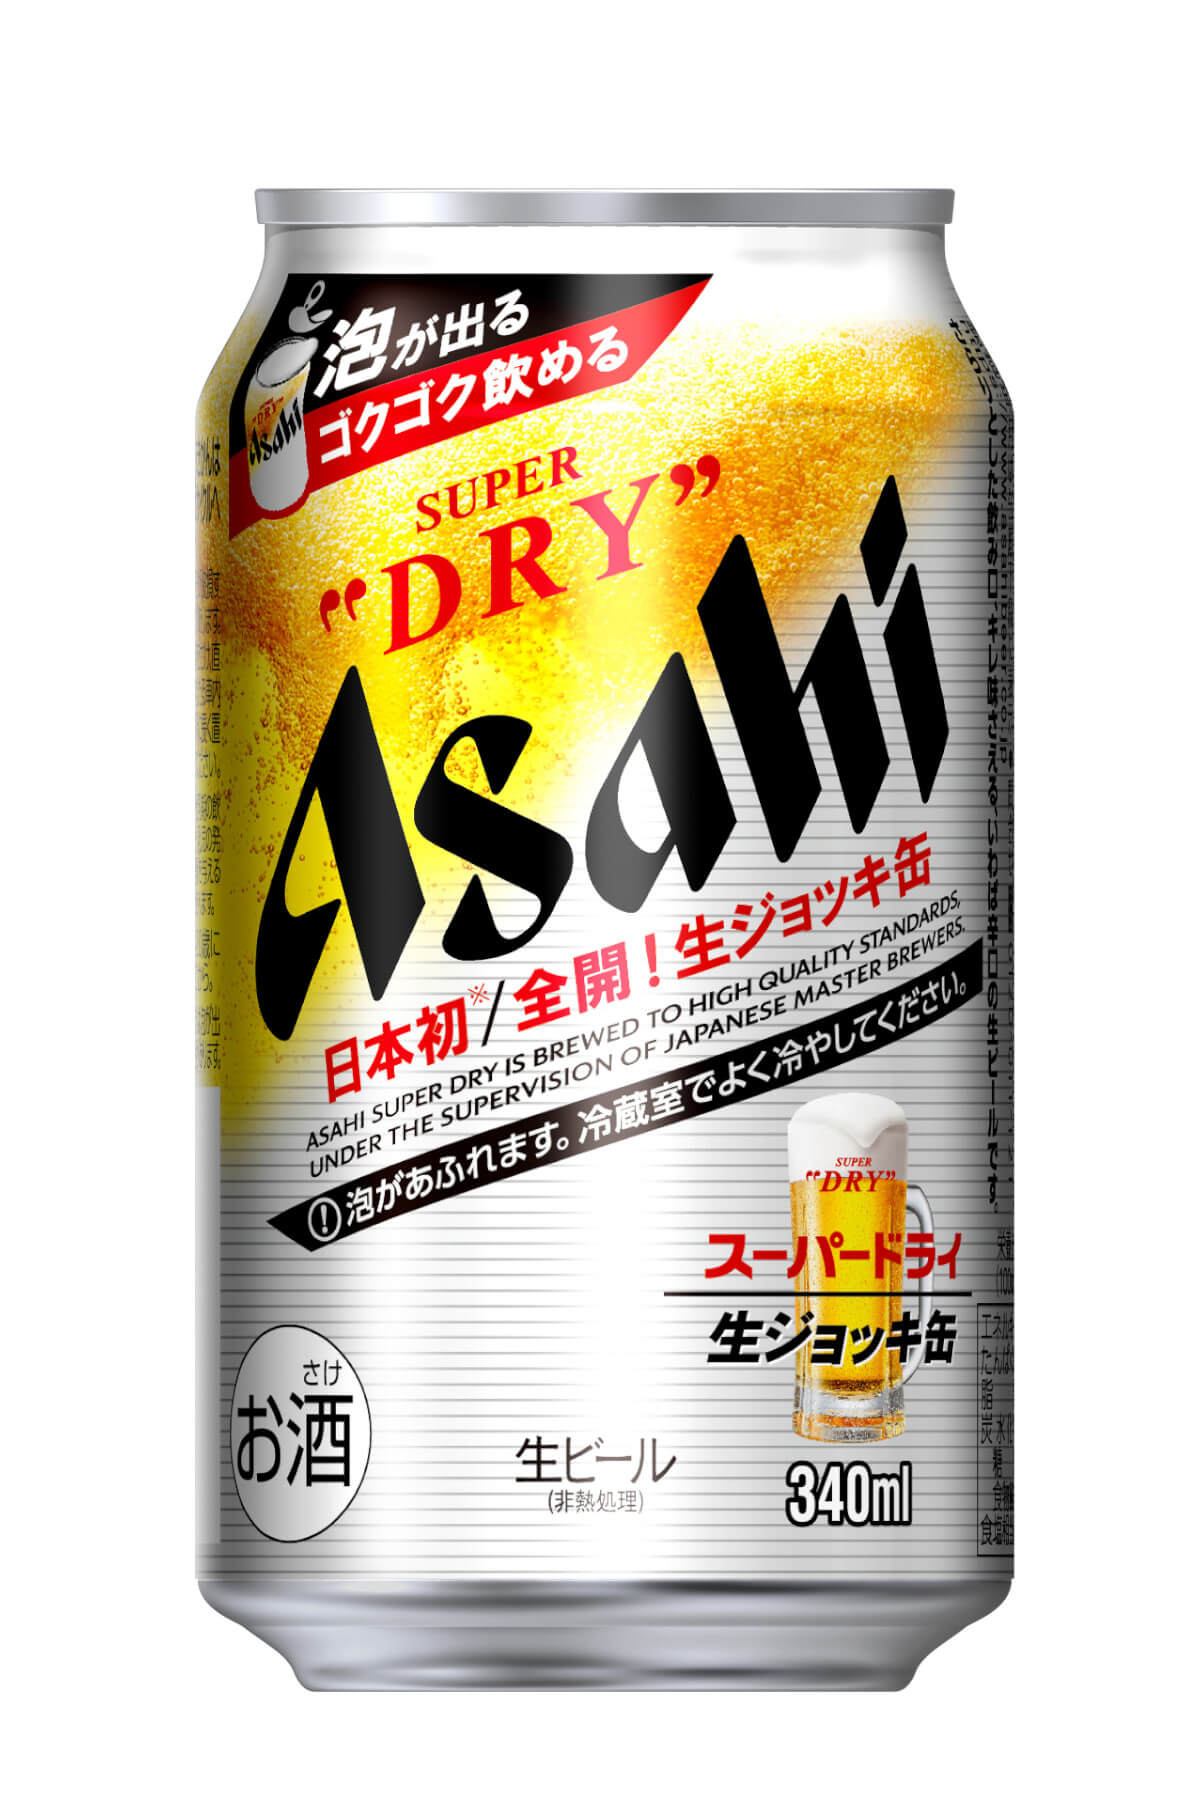 アサヒビール、日本初「生ジョッキ缶」で飲食店のような感動を